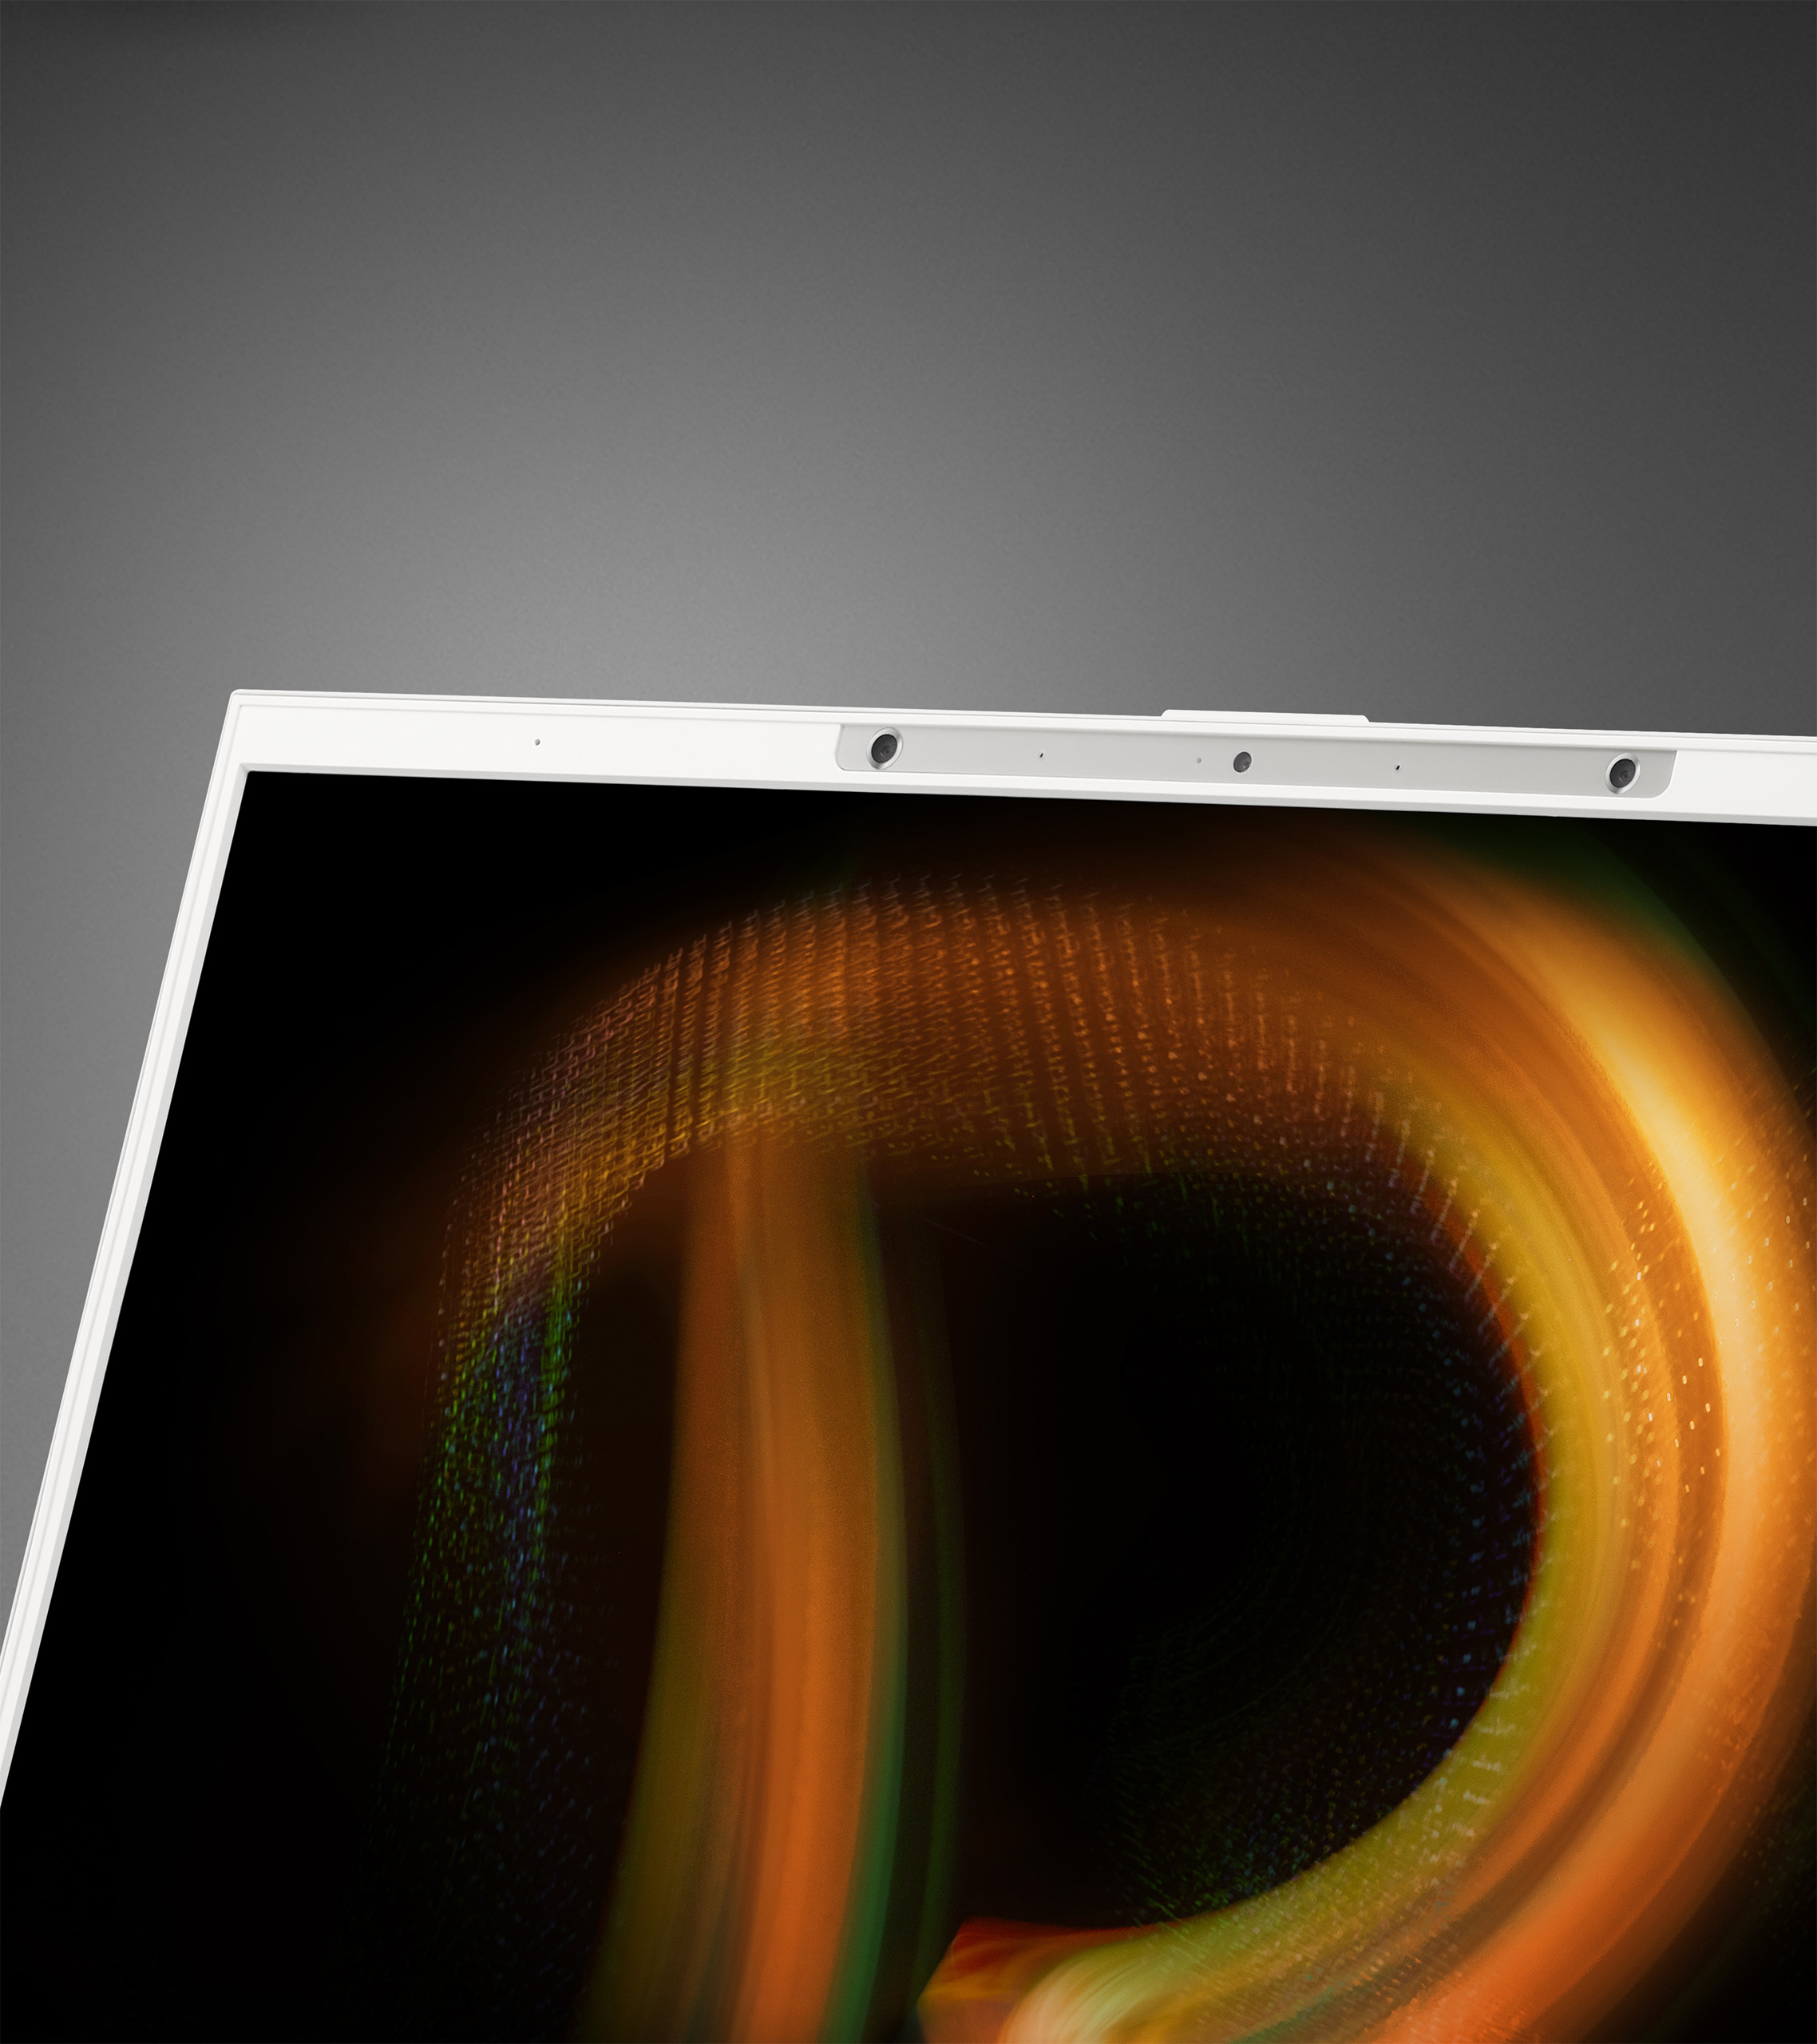 Acer giới thiệu laptop ConceptD 7 phiên bản SpatialLabs dành cho người sáng tạo đồ họa 3D